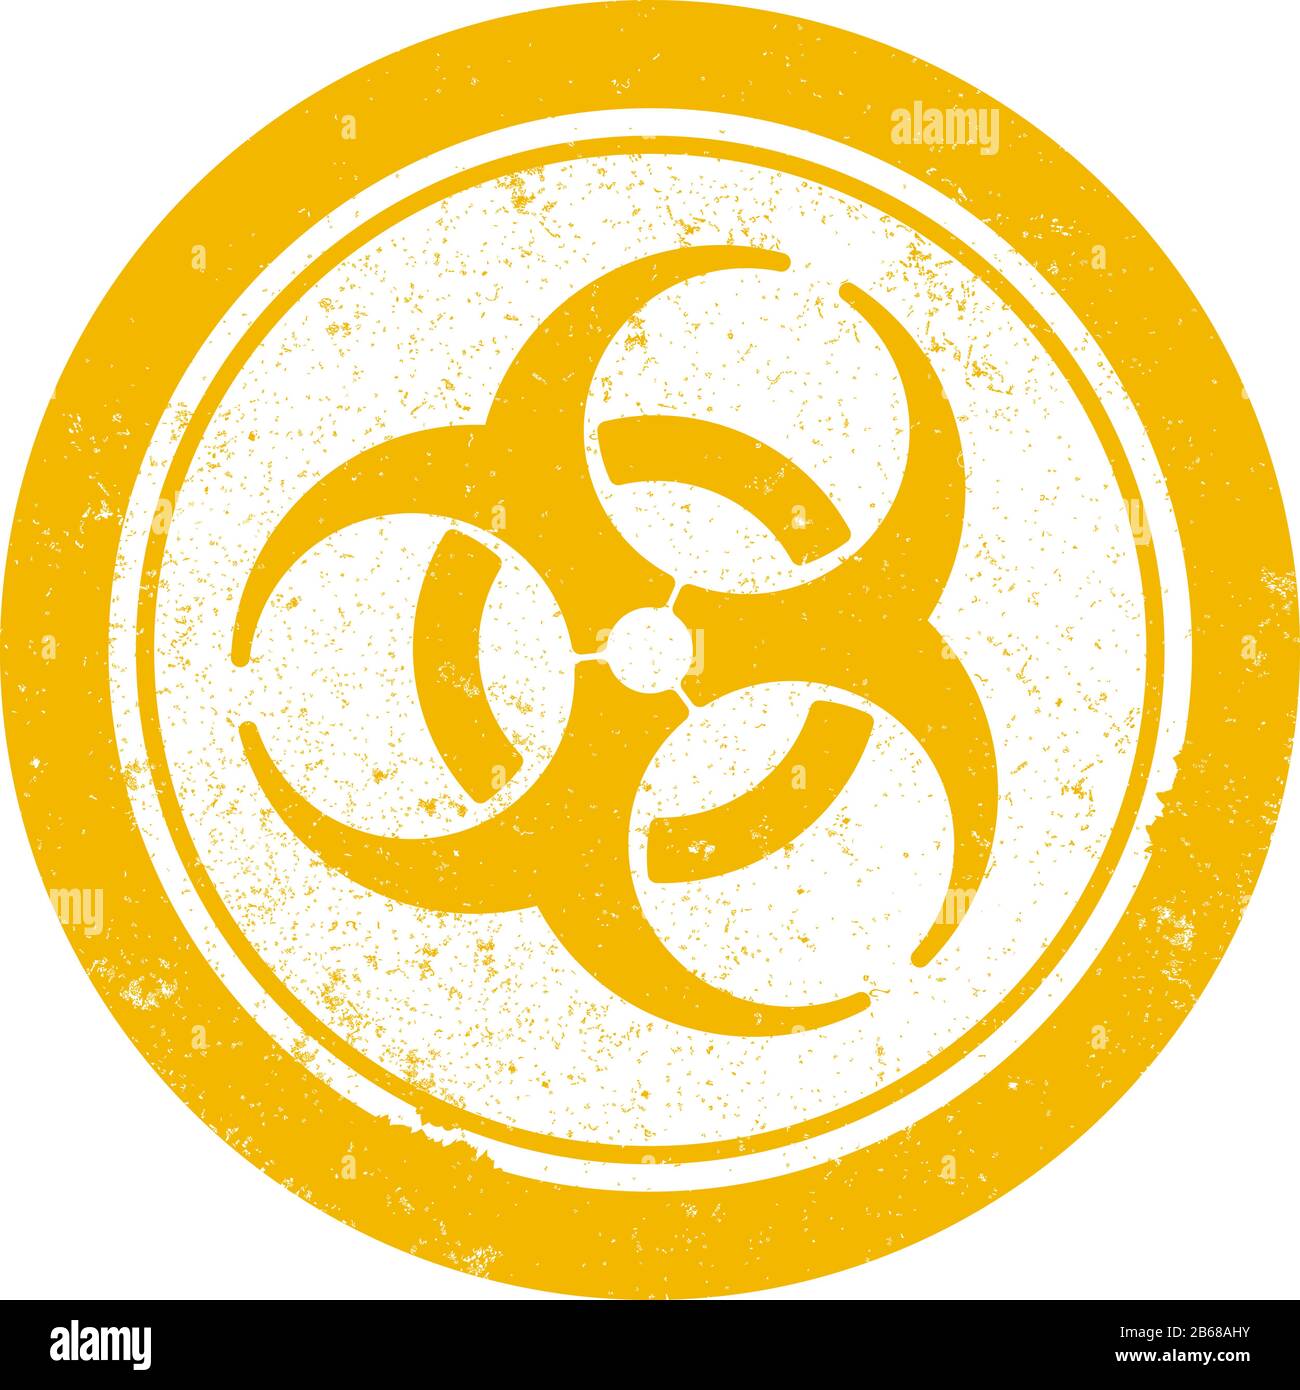 Grungelange orangefarbene, runde Grafik mit dem Symbol für biologische Gefahrenstoffel, Gummistempelvektor Stock Vektor